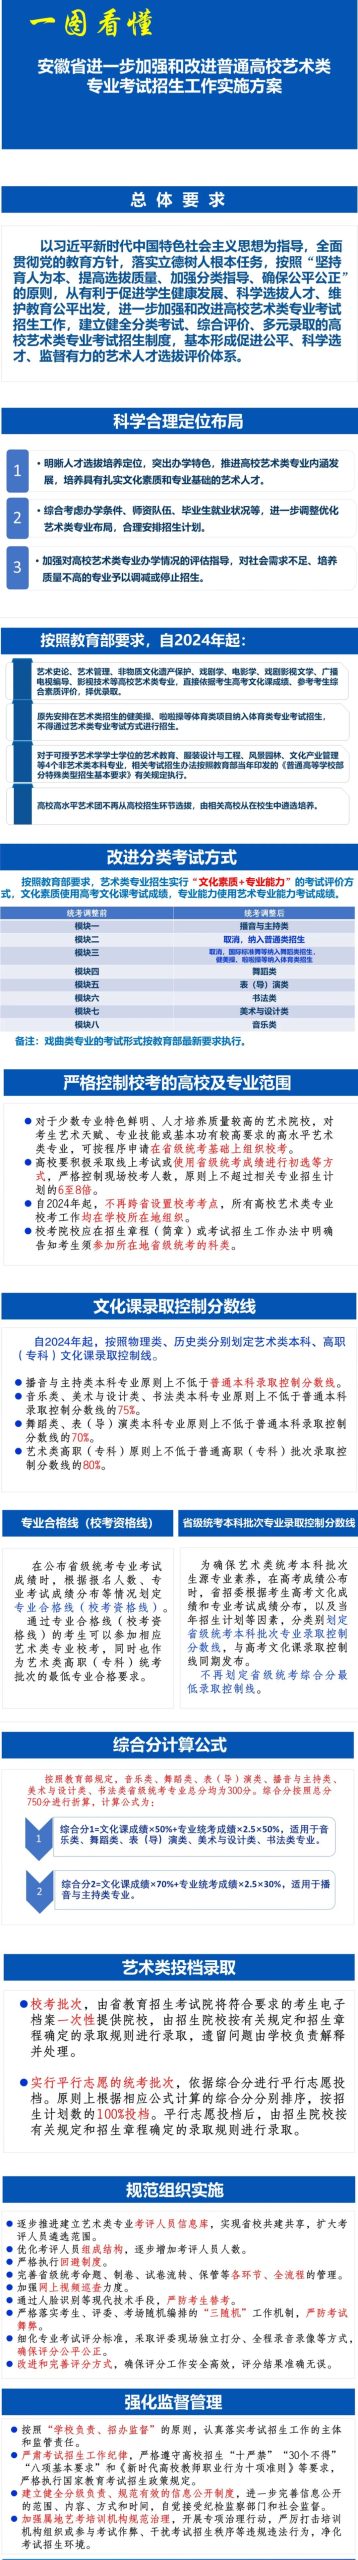 安徽艺术类实施方案、考试说明发布 (http://www.hnyixiao.com/) 艺考界资讯 第1张